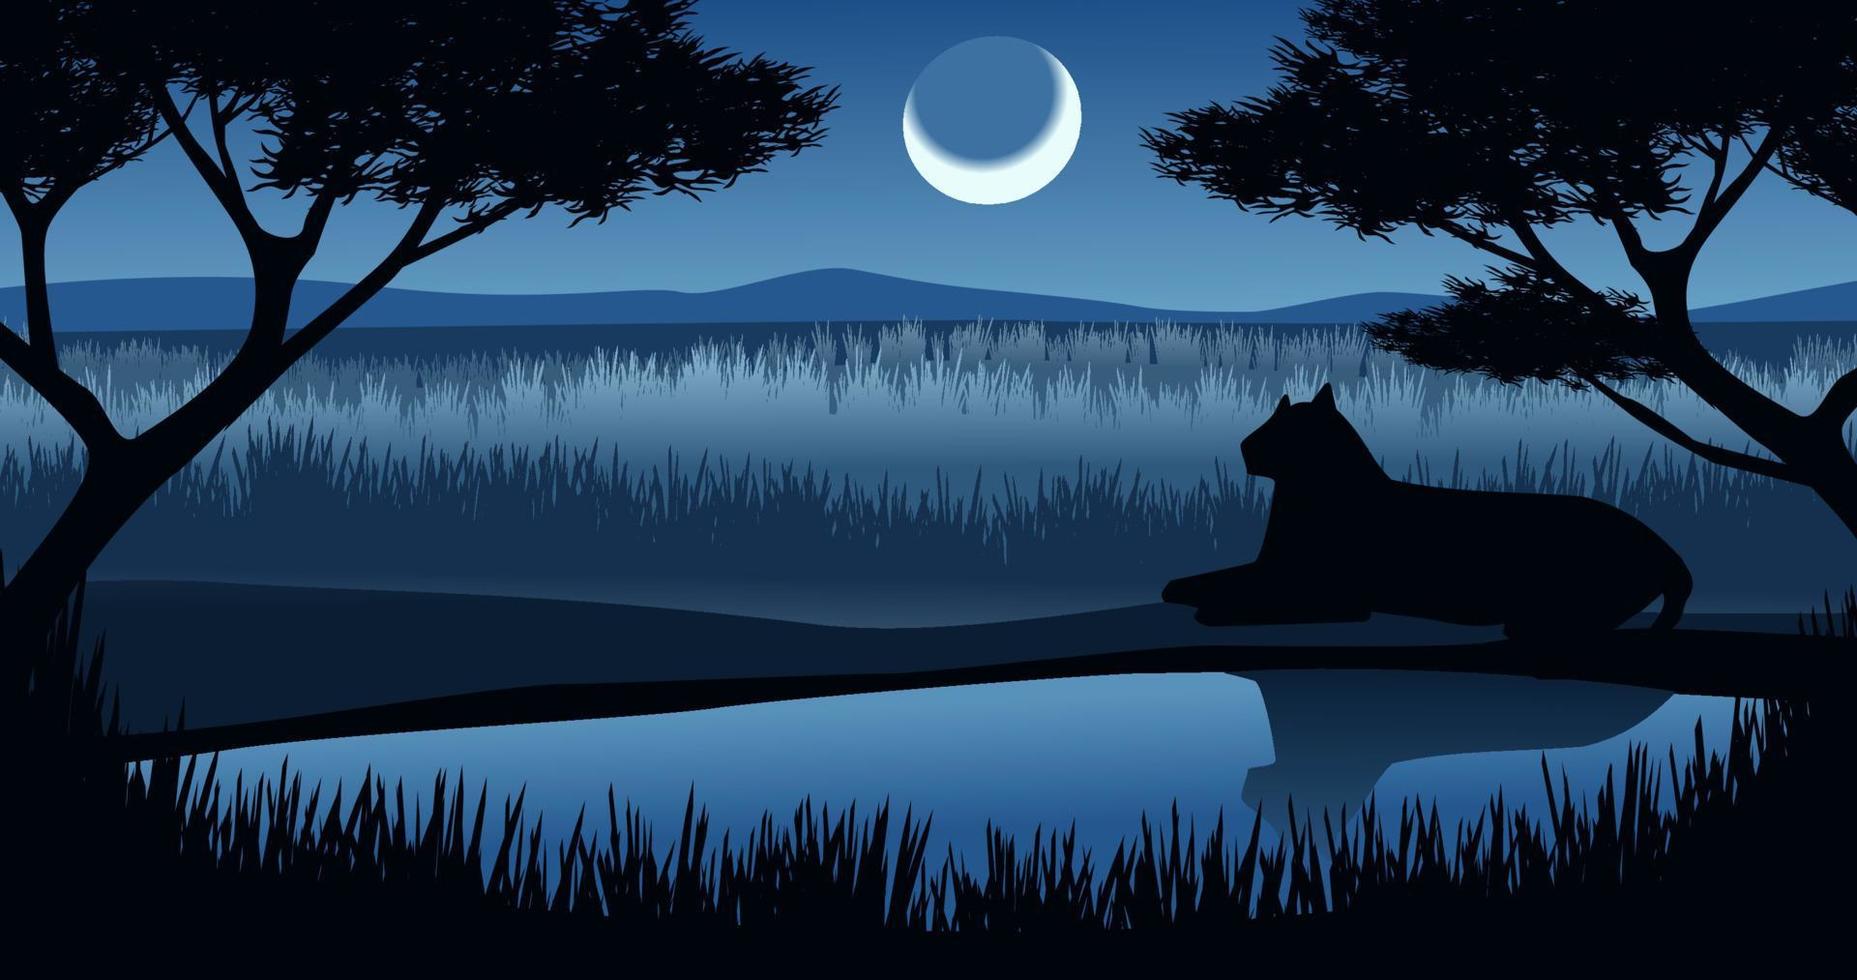 nacht in savanah met halve maan maan en een luipaard resting Bij de vijver. vector natuur dieren in het wild illustratie